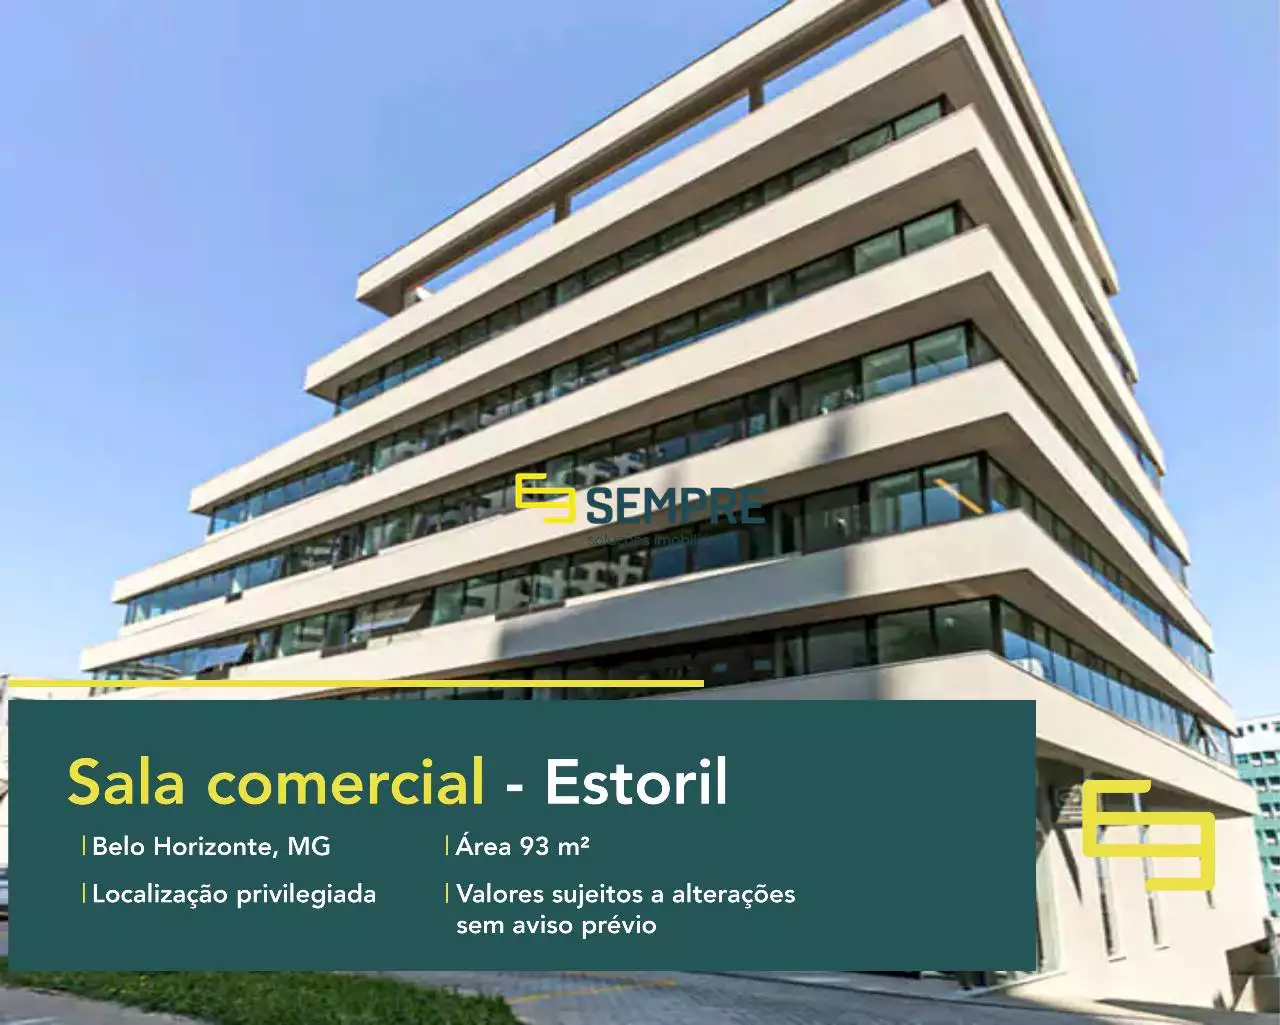 Sala comercial no bairro Estoril à venda em BH, em excelente localização. O estabelecimento comercial conta com área de 93 m².